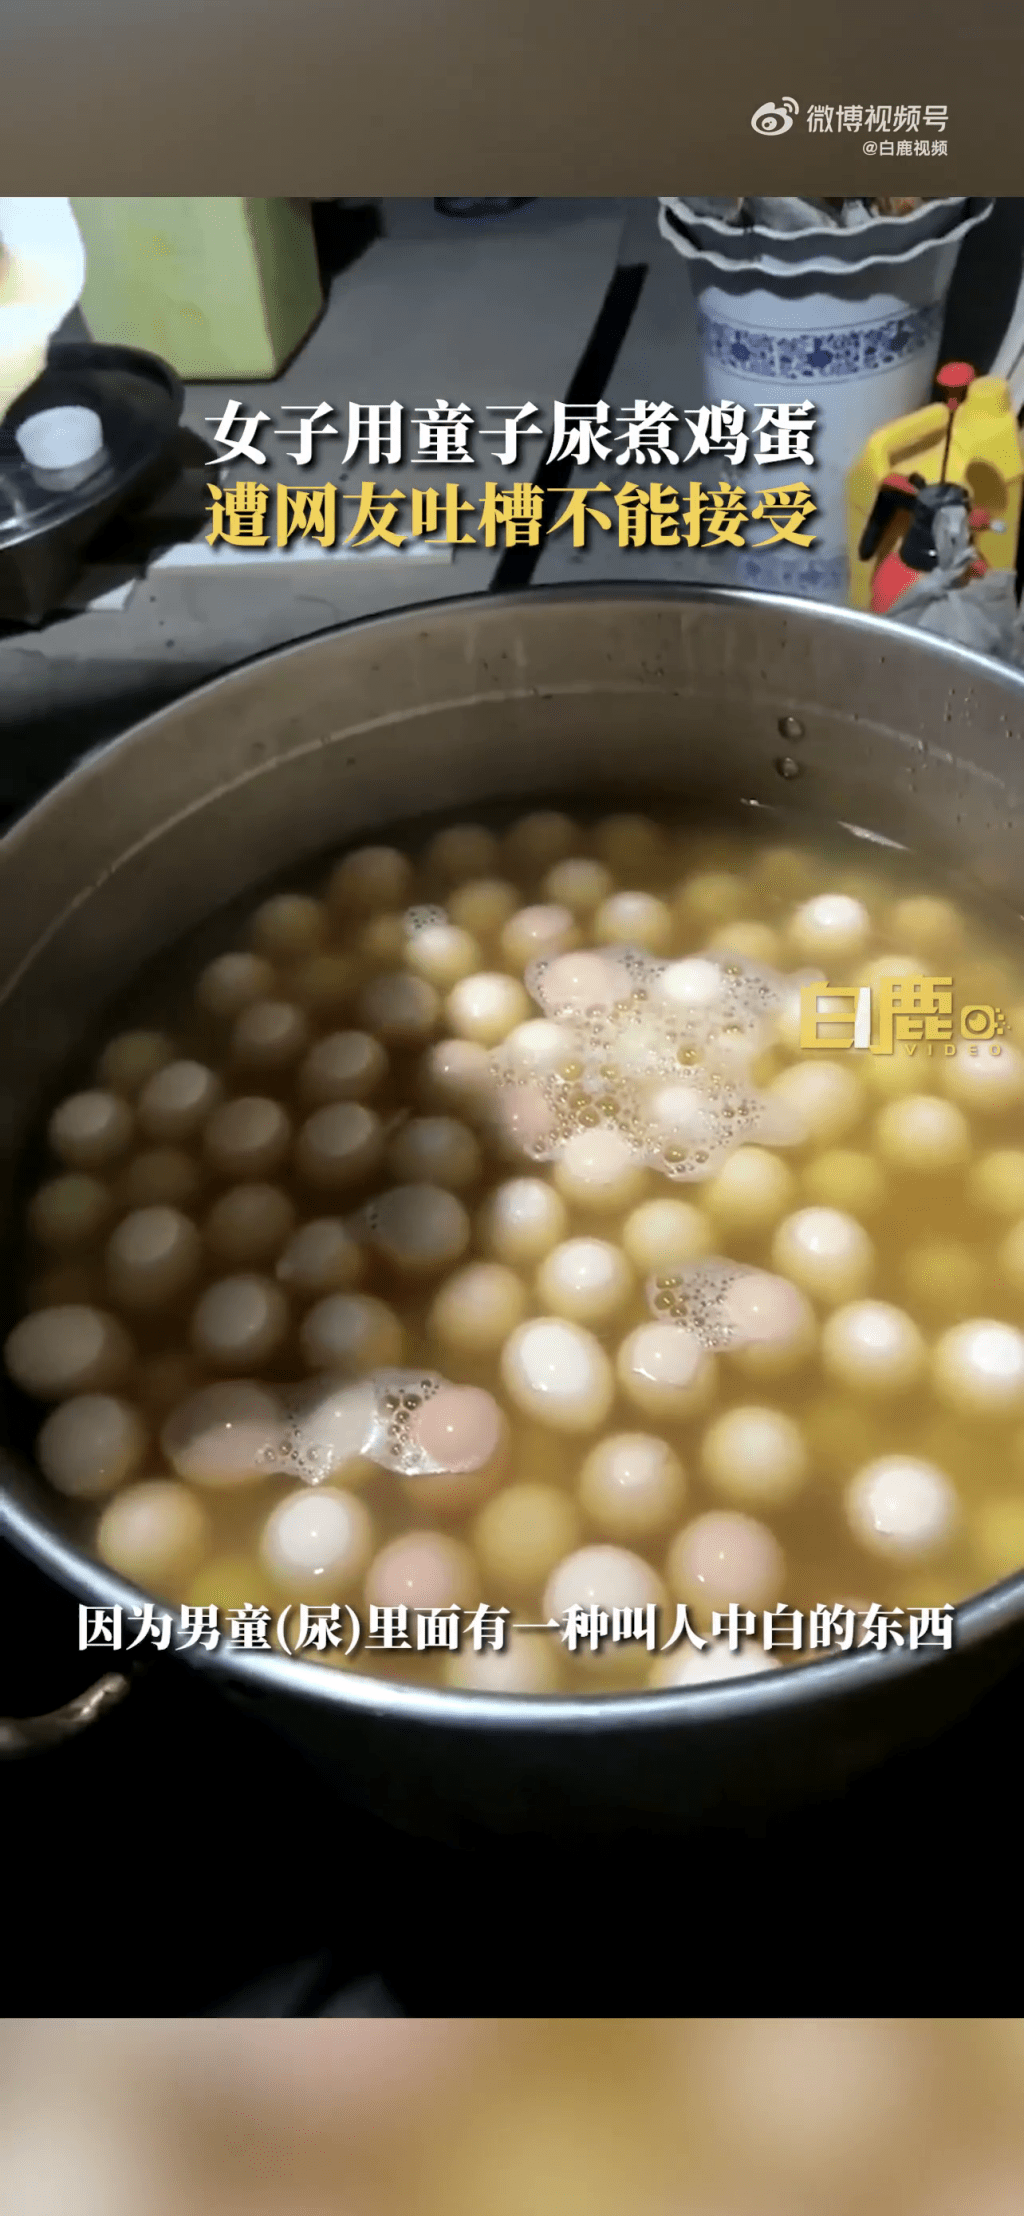 浙江东阳一名女子发布影片称用童子尿煮鸡蛋并出售，引起广泛关注。